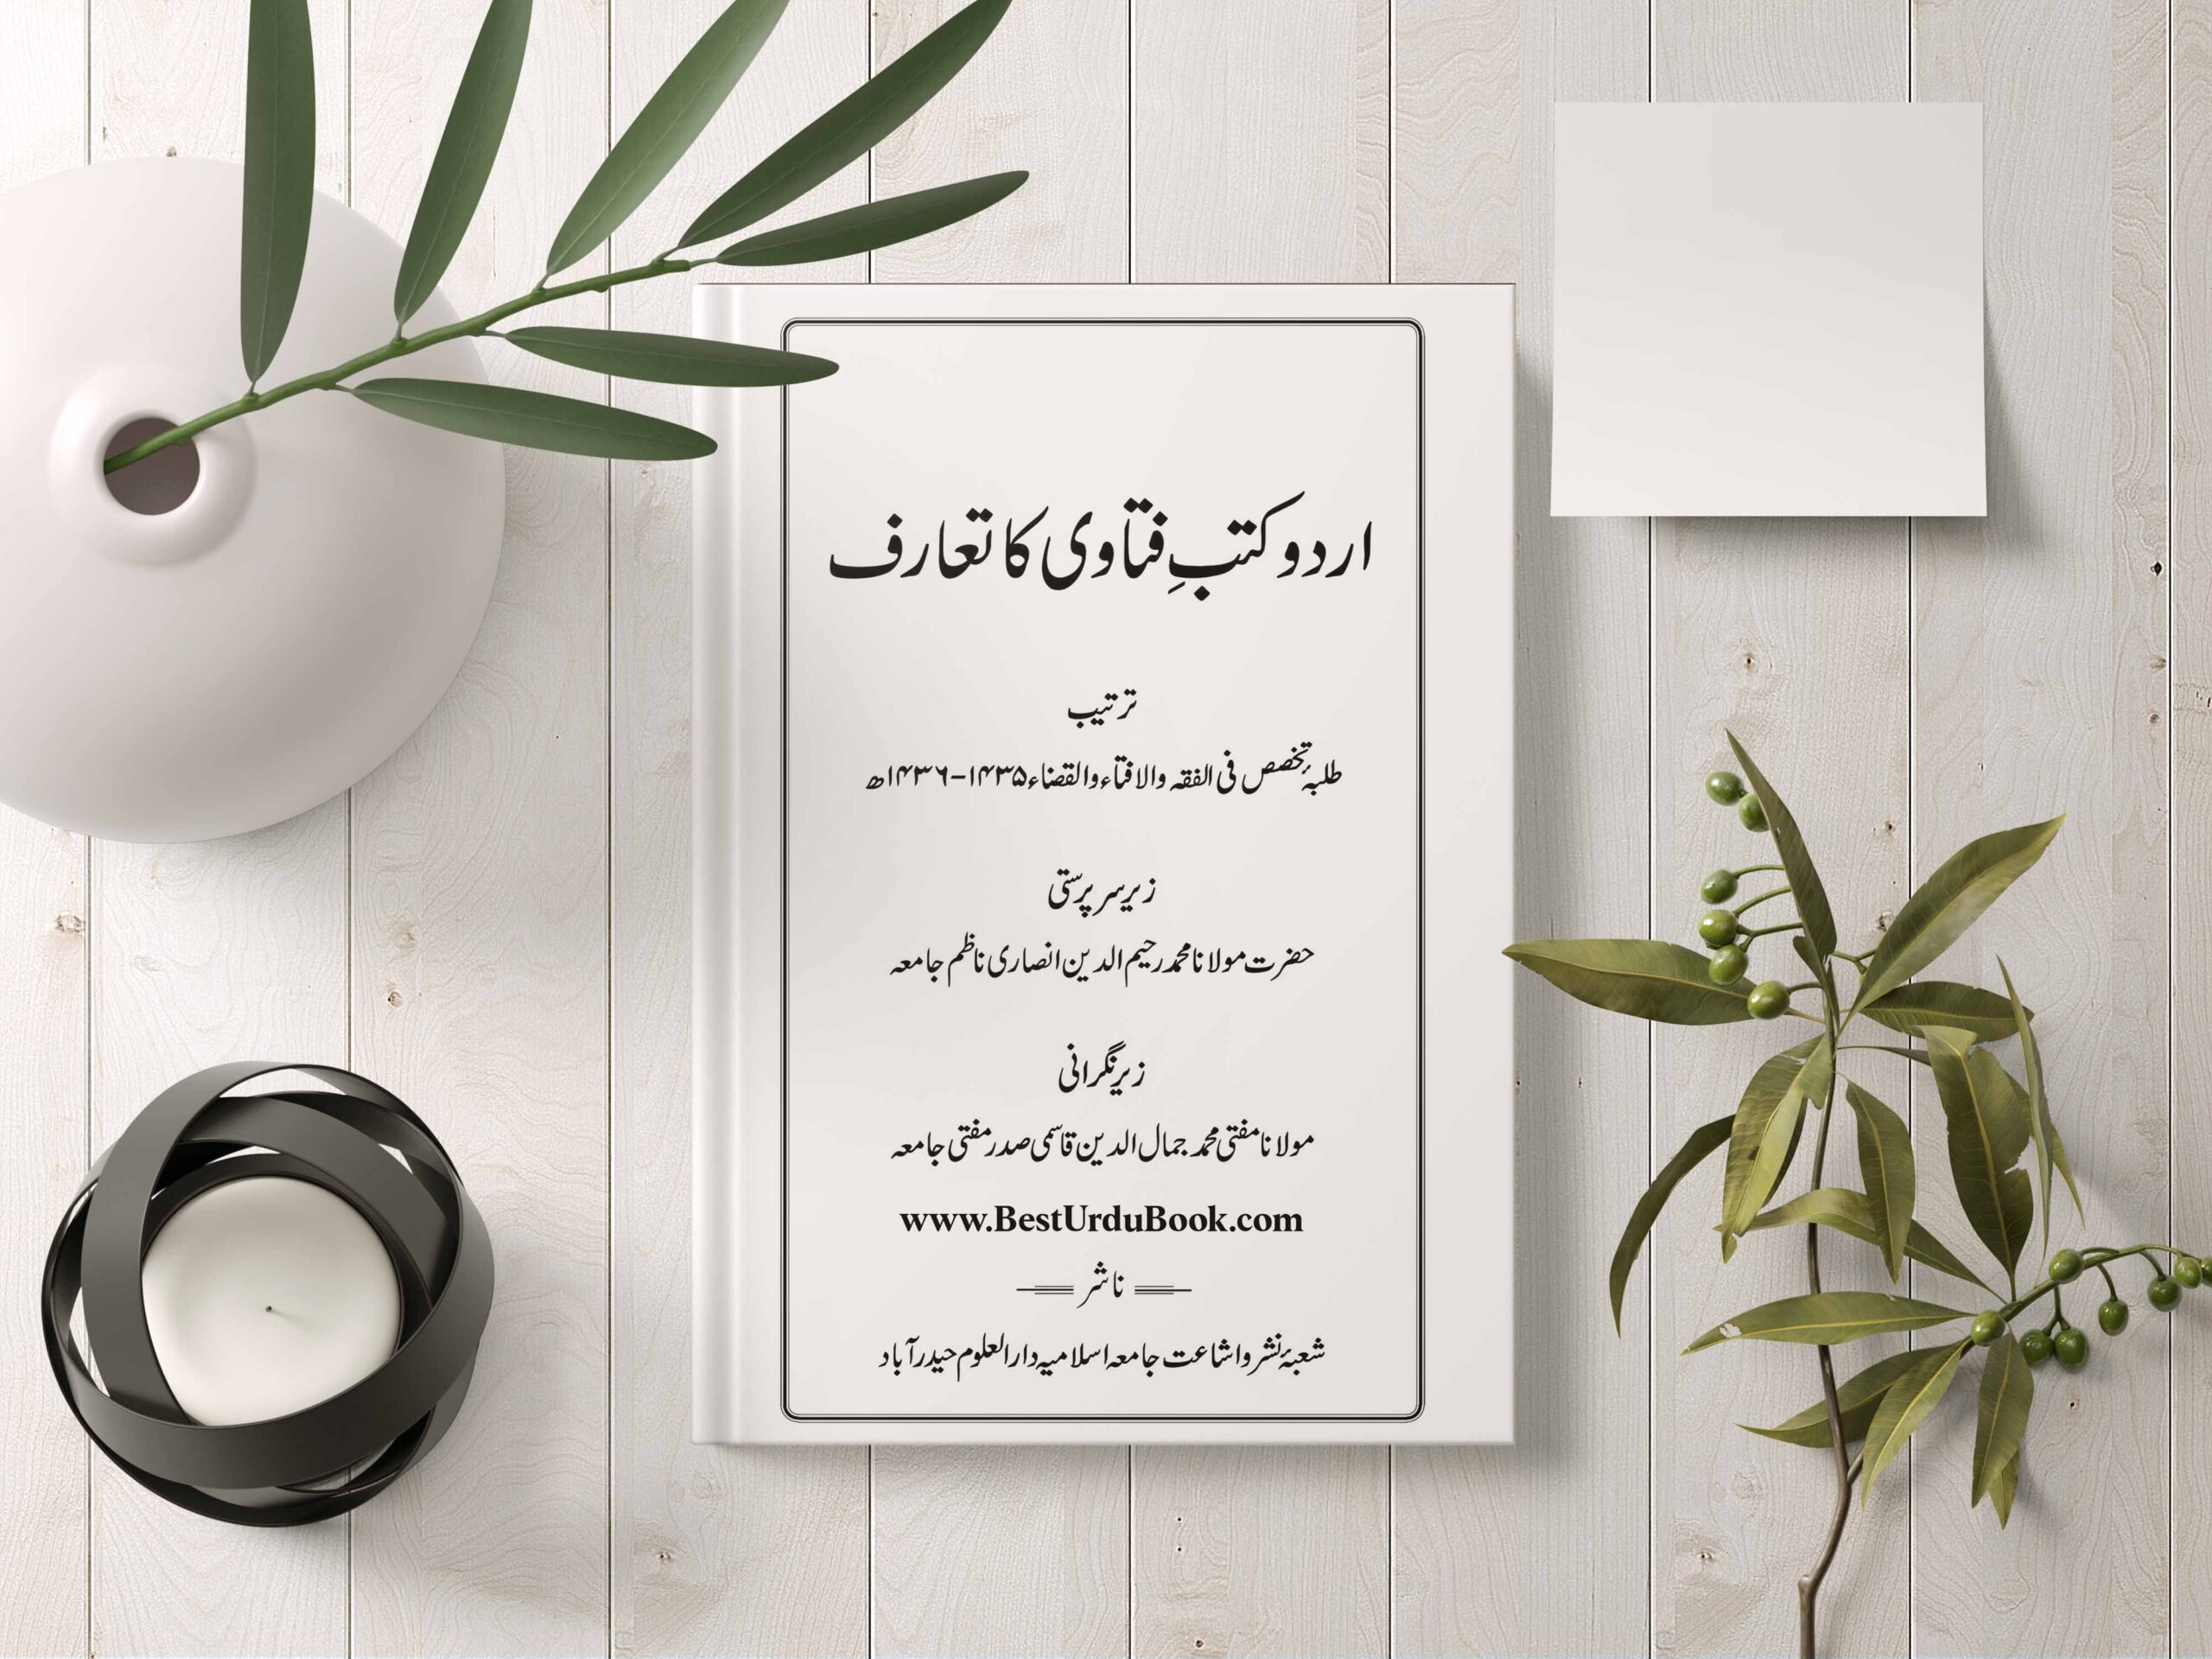 Urdu Kutub e Fatawa Book Download In Urdu & pdf format